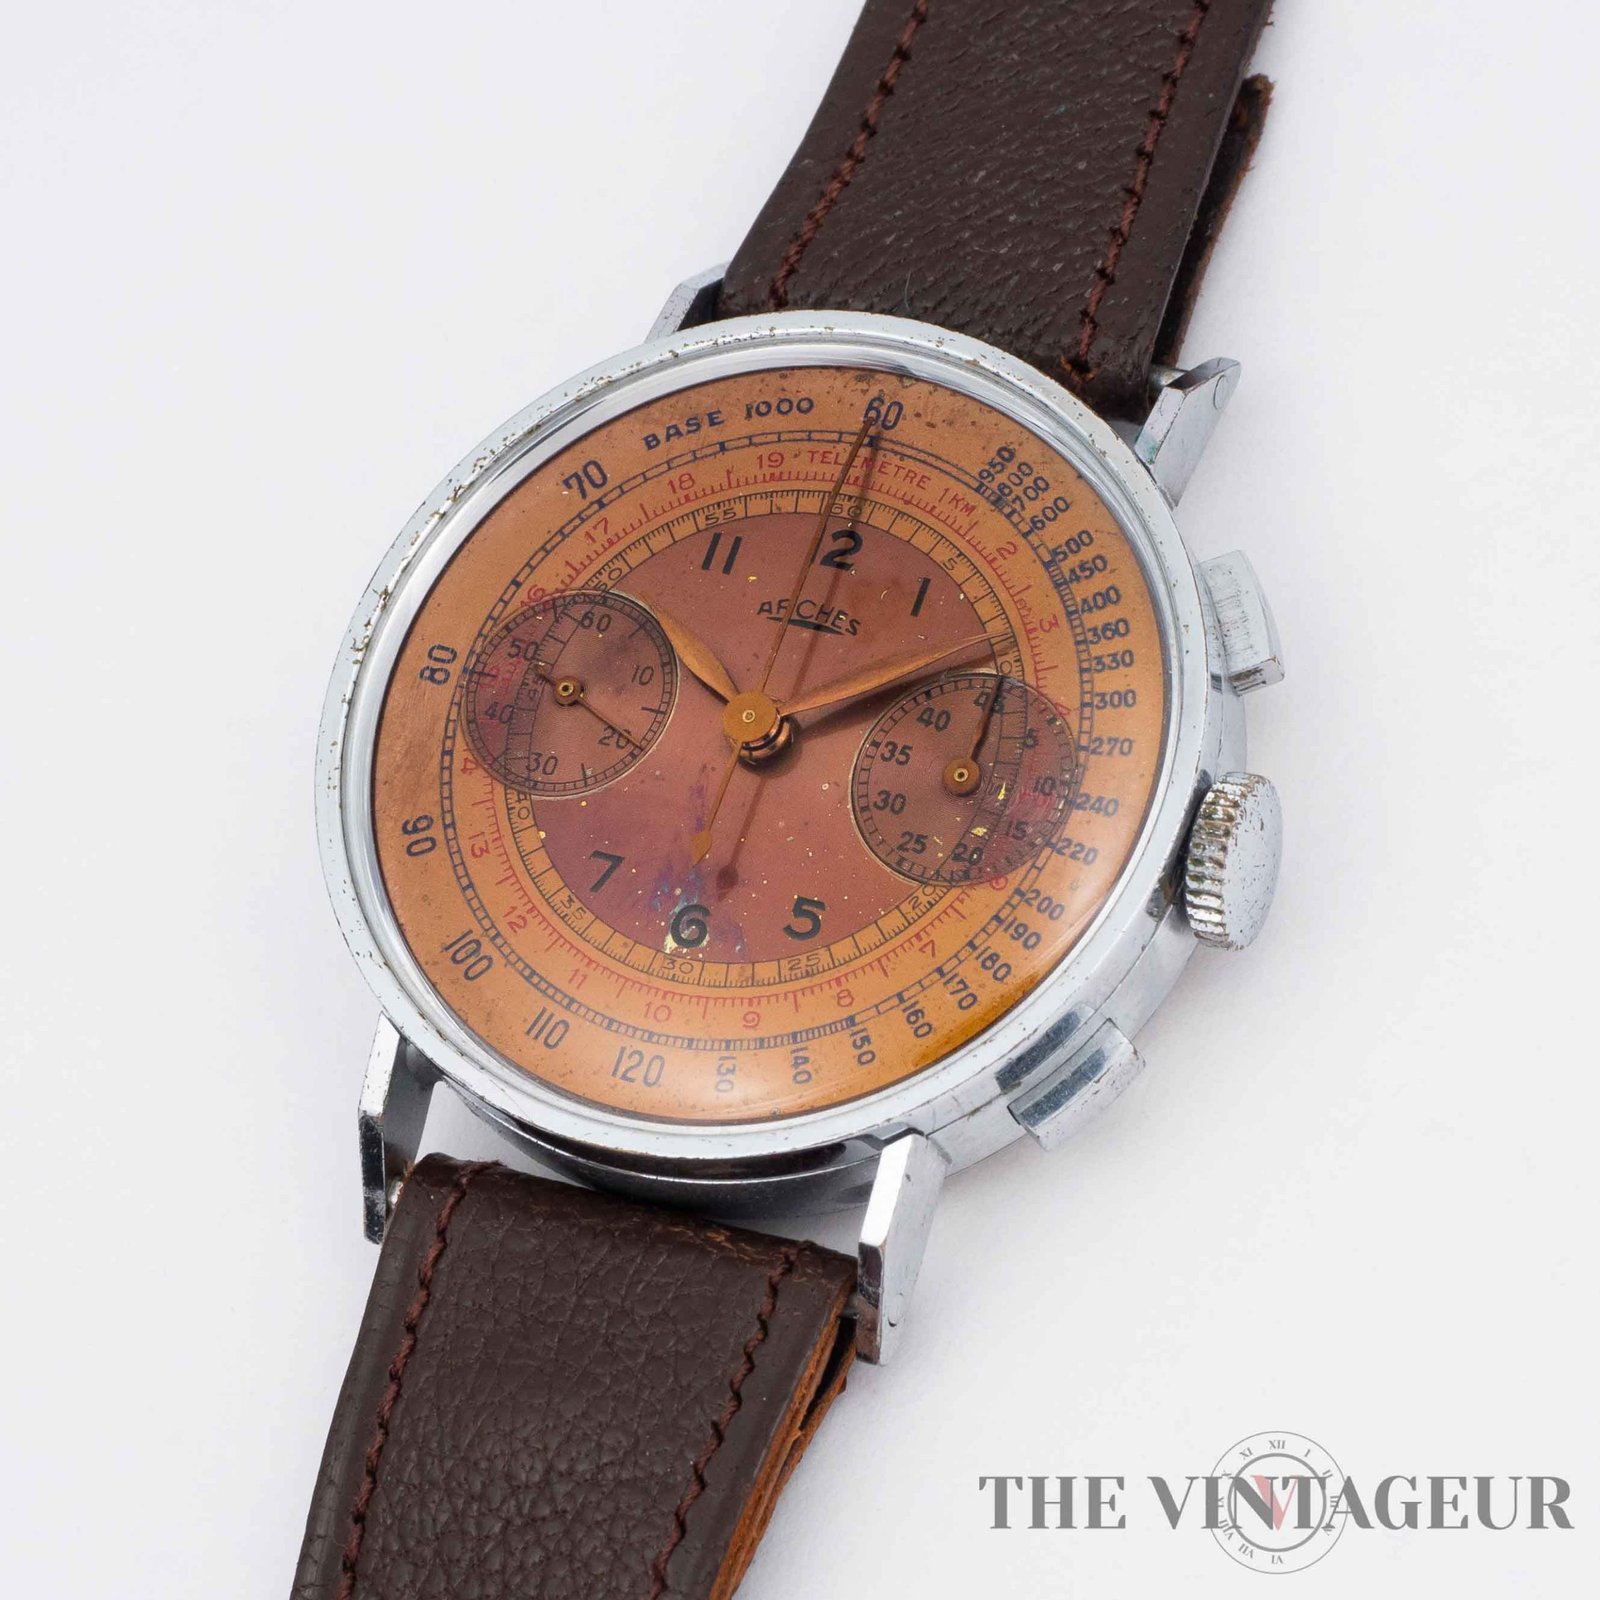 Vintage Arch Watch Creations Stainless Steel Wristwatch In Original Box |  eBay